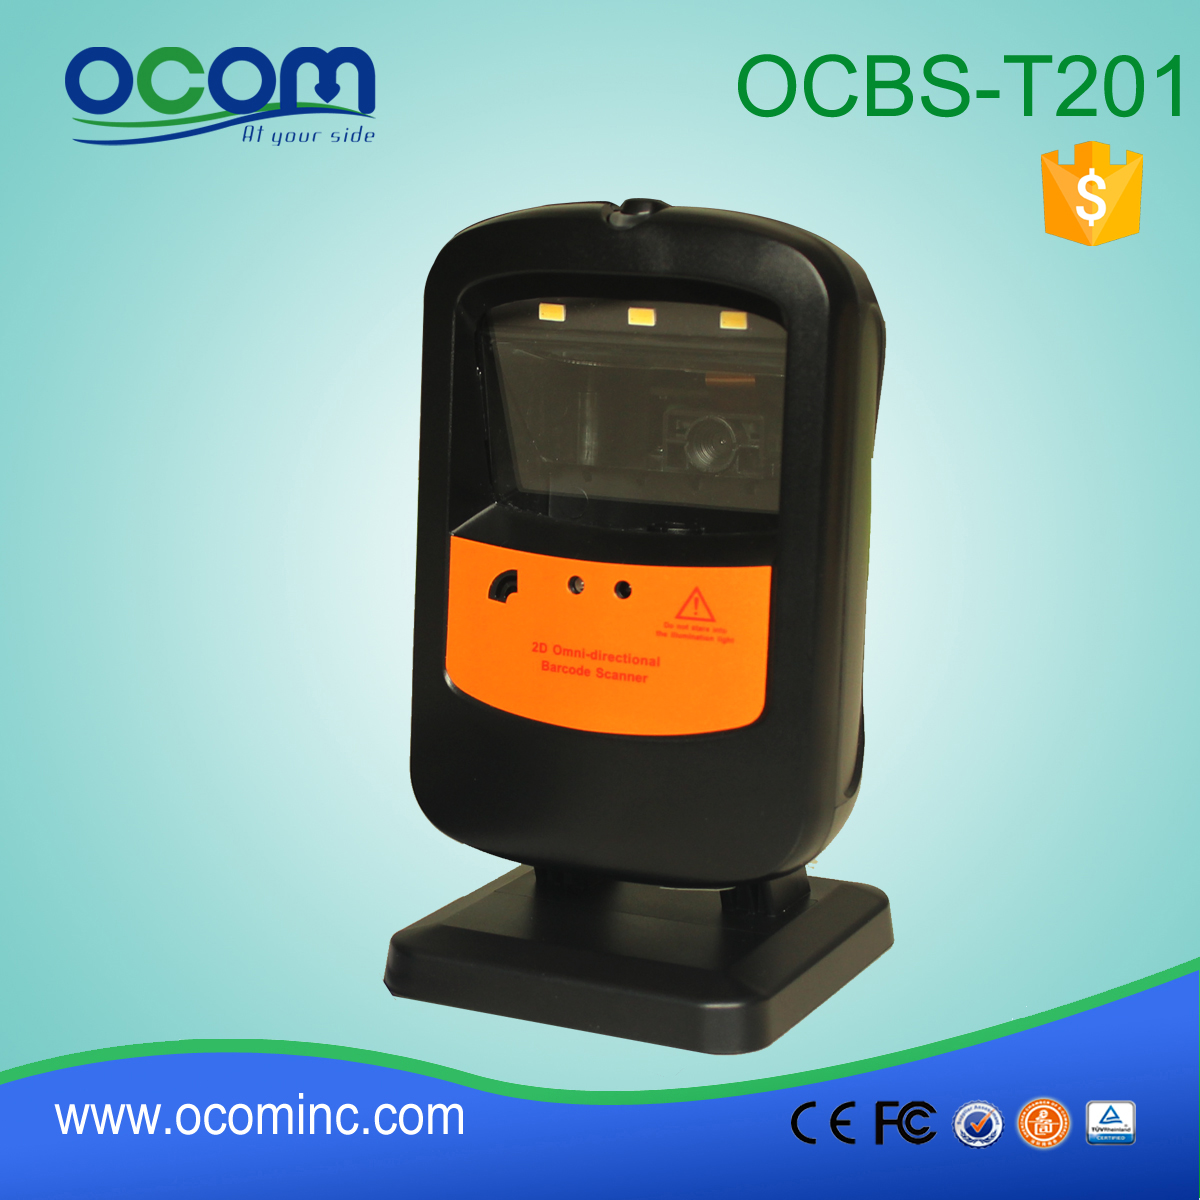 OCBS-T201: ماسح الباركود جبل الثابتة USB صغير، ماسح الباركود الليزر